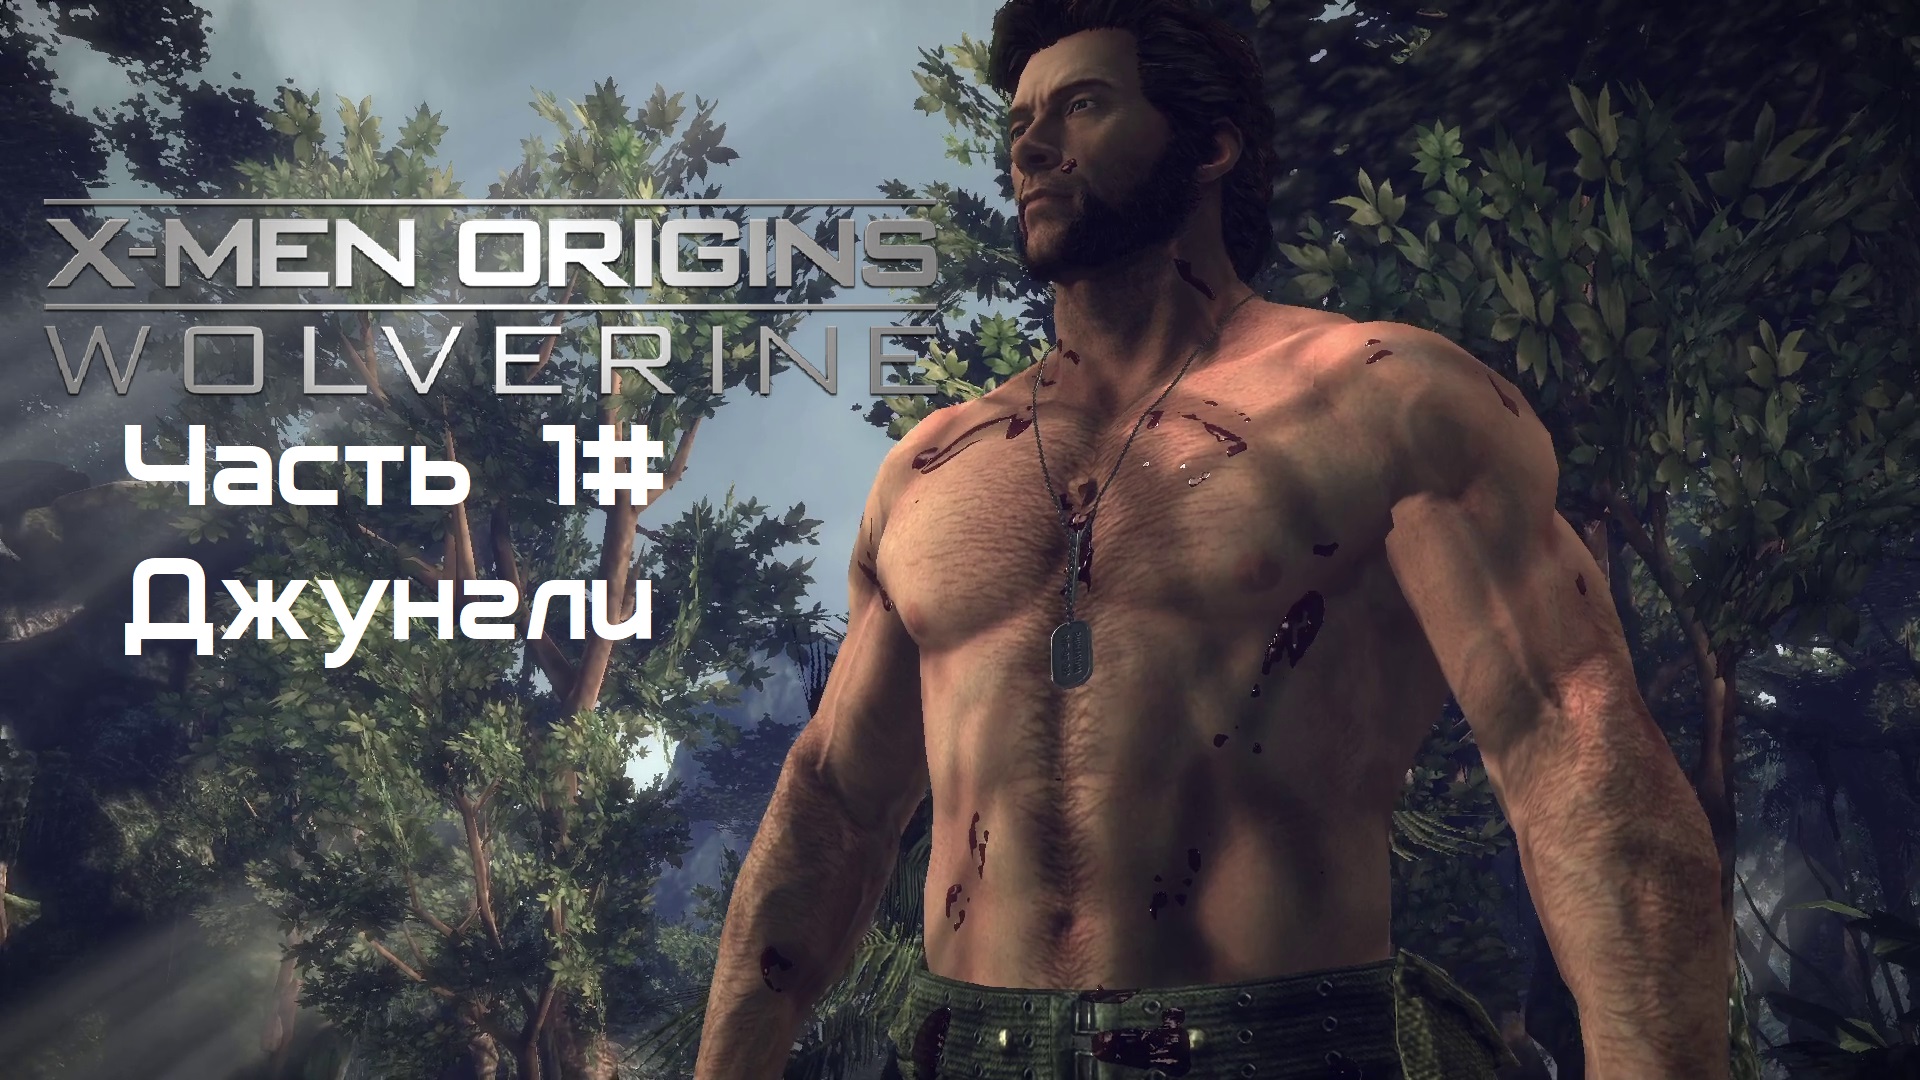 Прохождение X-Men Origins: - Wolverine Часть 1# Джунгли (1080p 60fps)